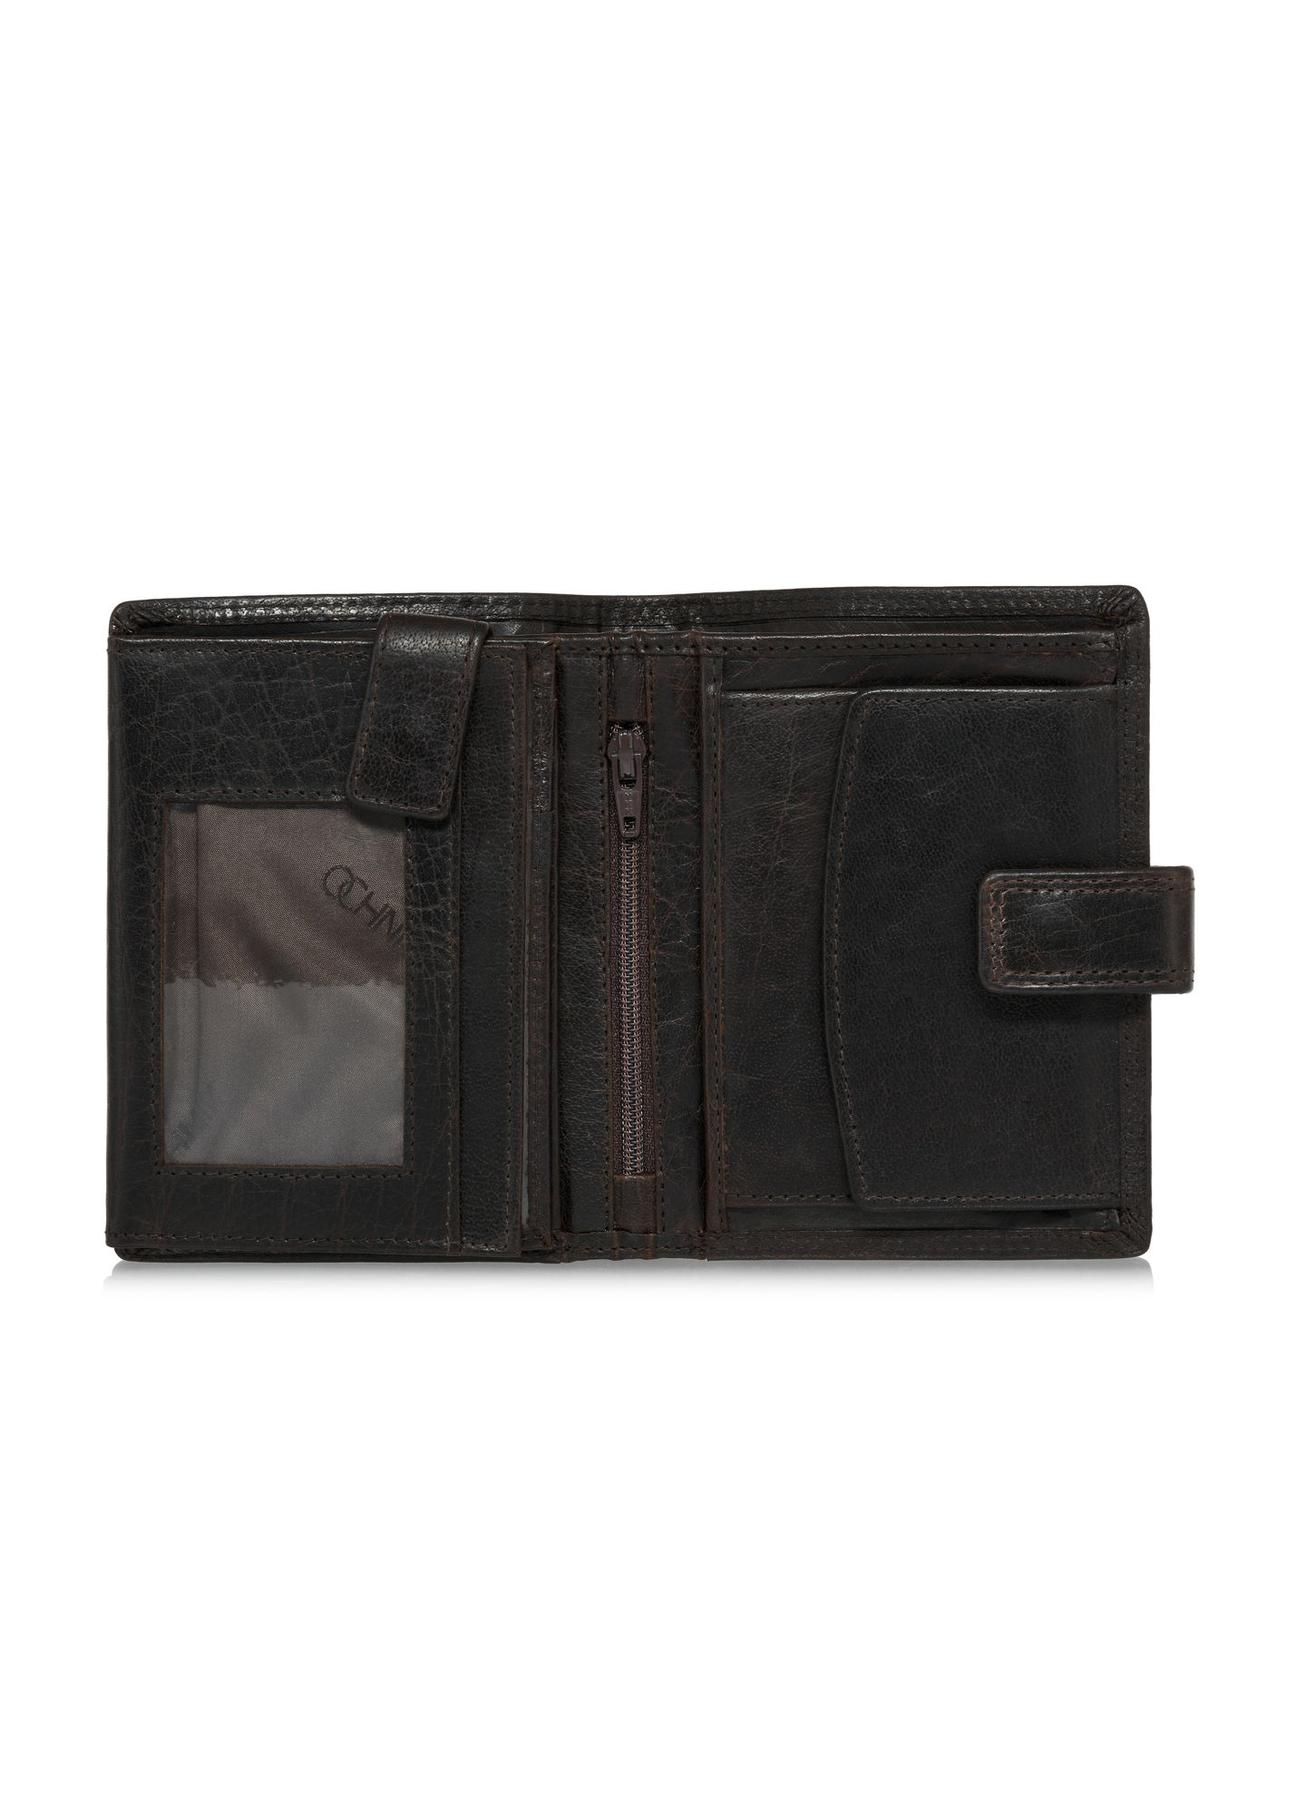 Brązowy lakierowany skórzany portfel męski PORMS-0552-89(W24)